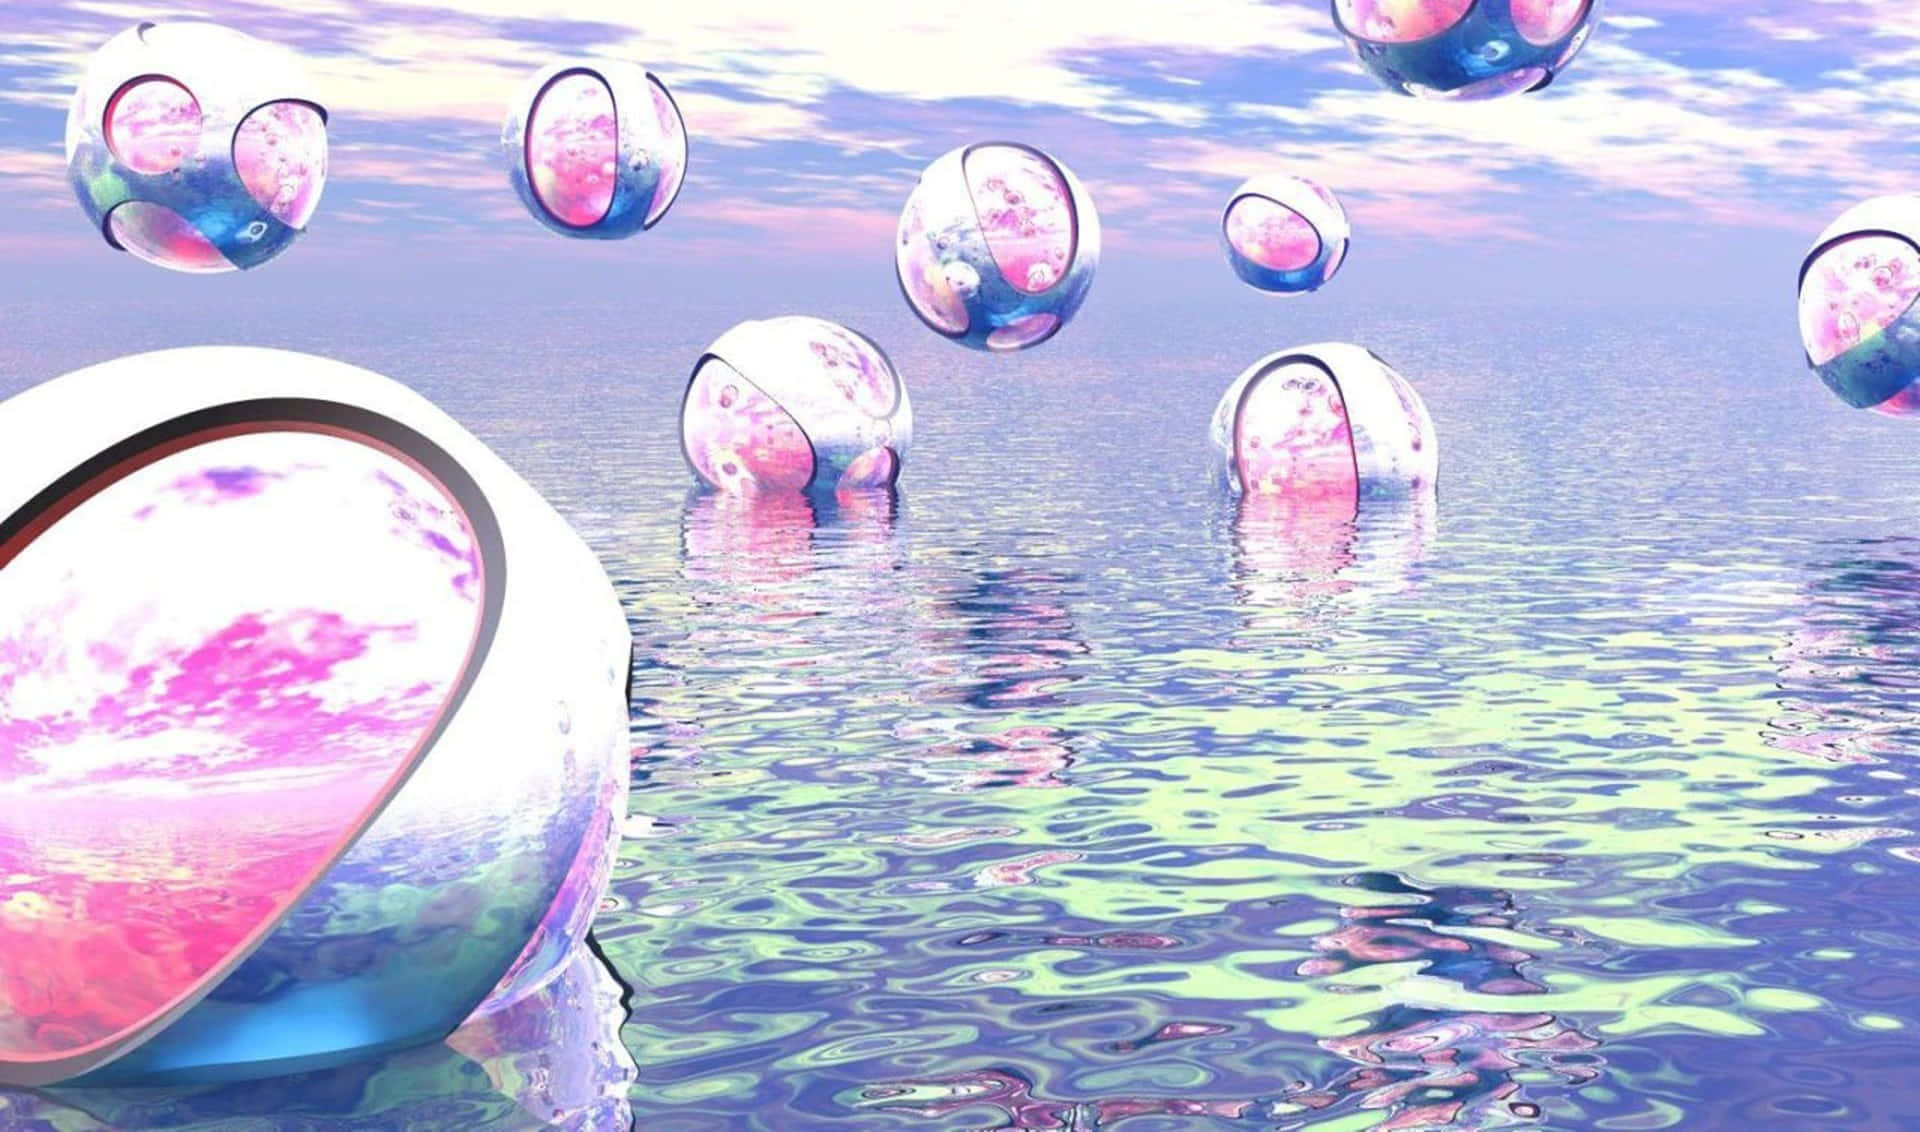 Surreal_ Bubble_ Dreamscape Wallpaper